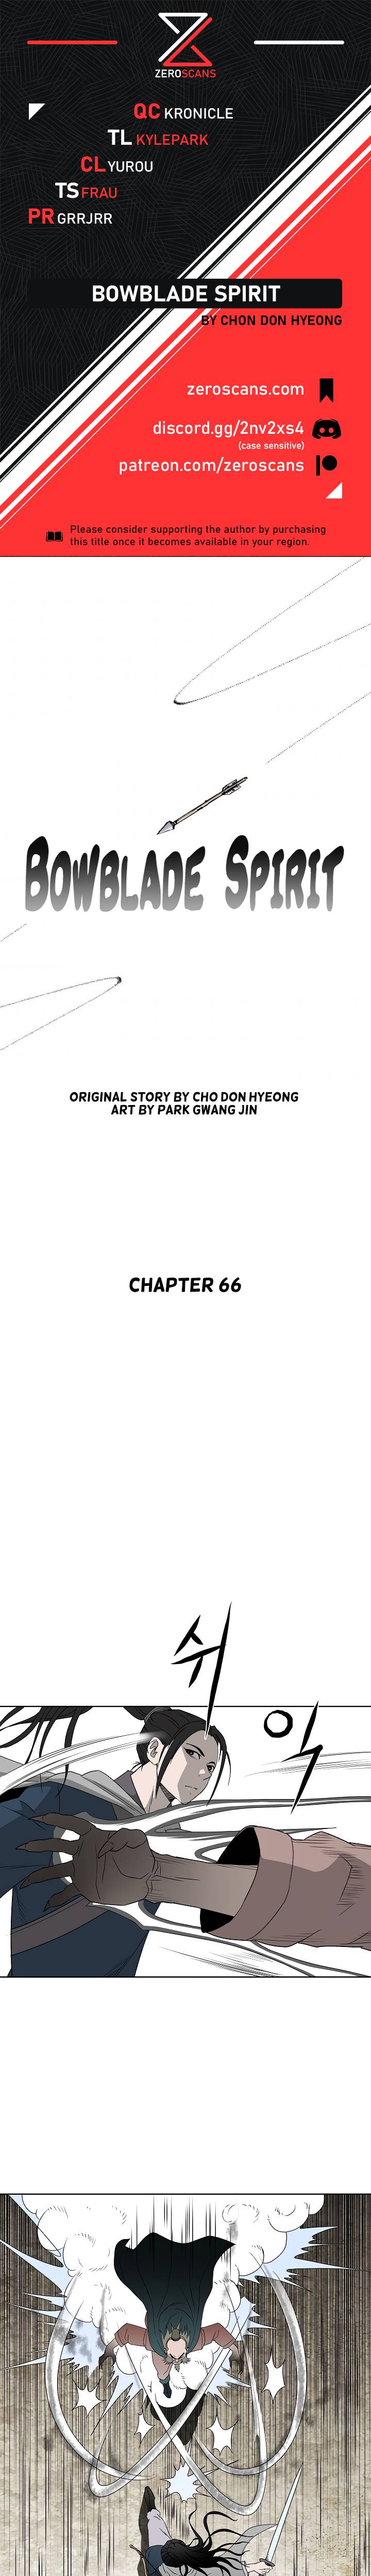 Bowblade Spirit - Chapter 66 Page 1